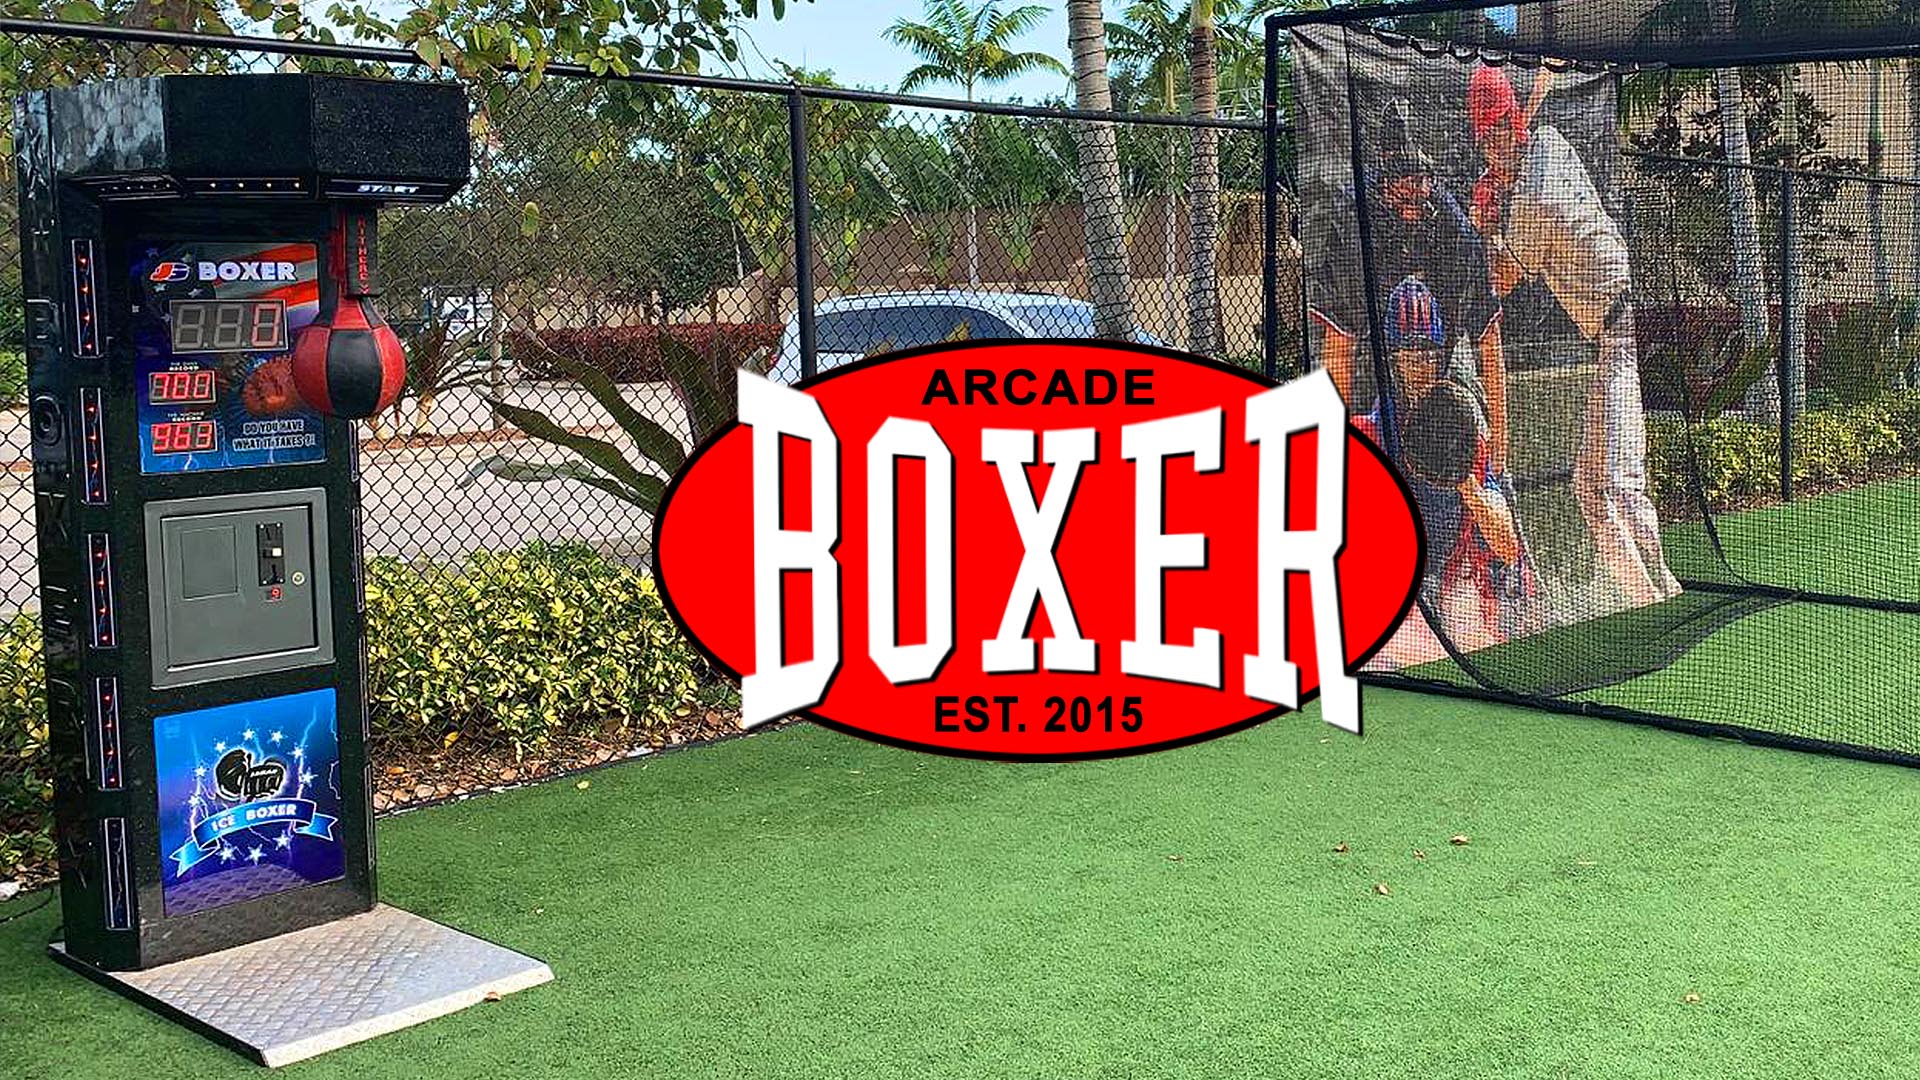 boxer punching arcade machine rental in orlando florida